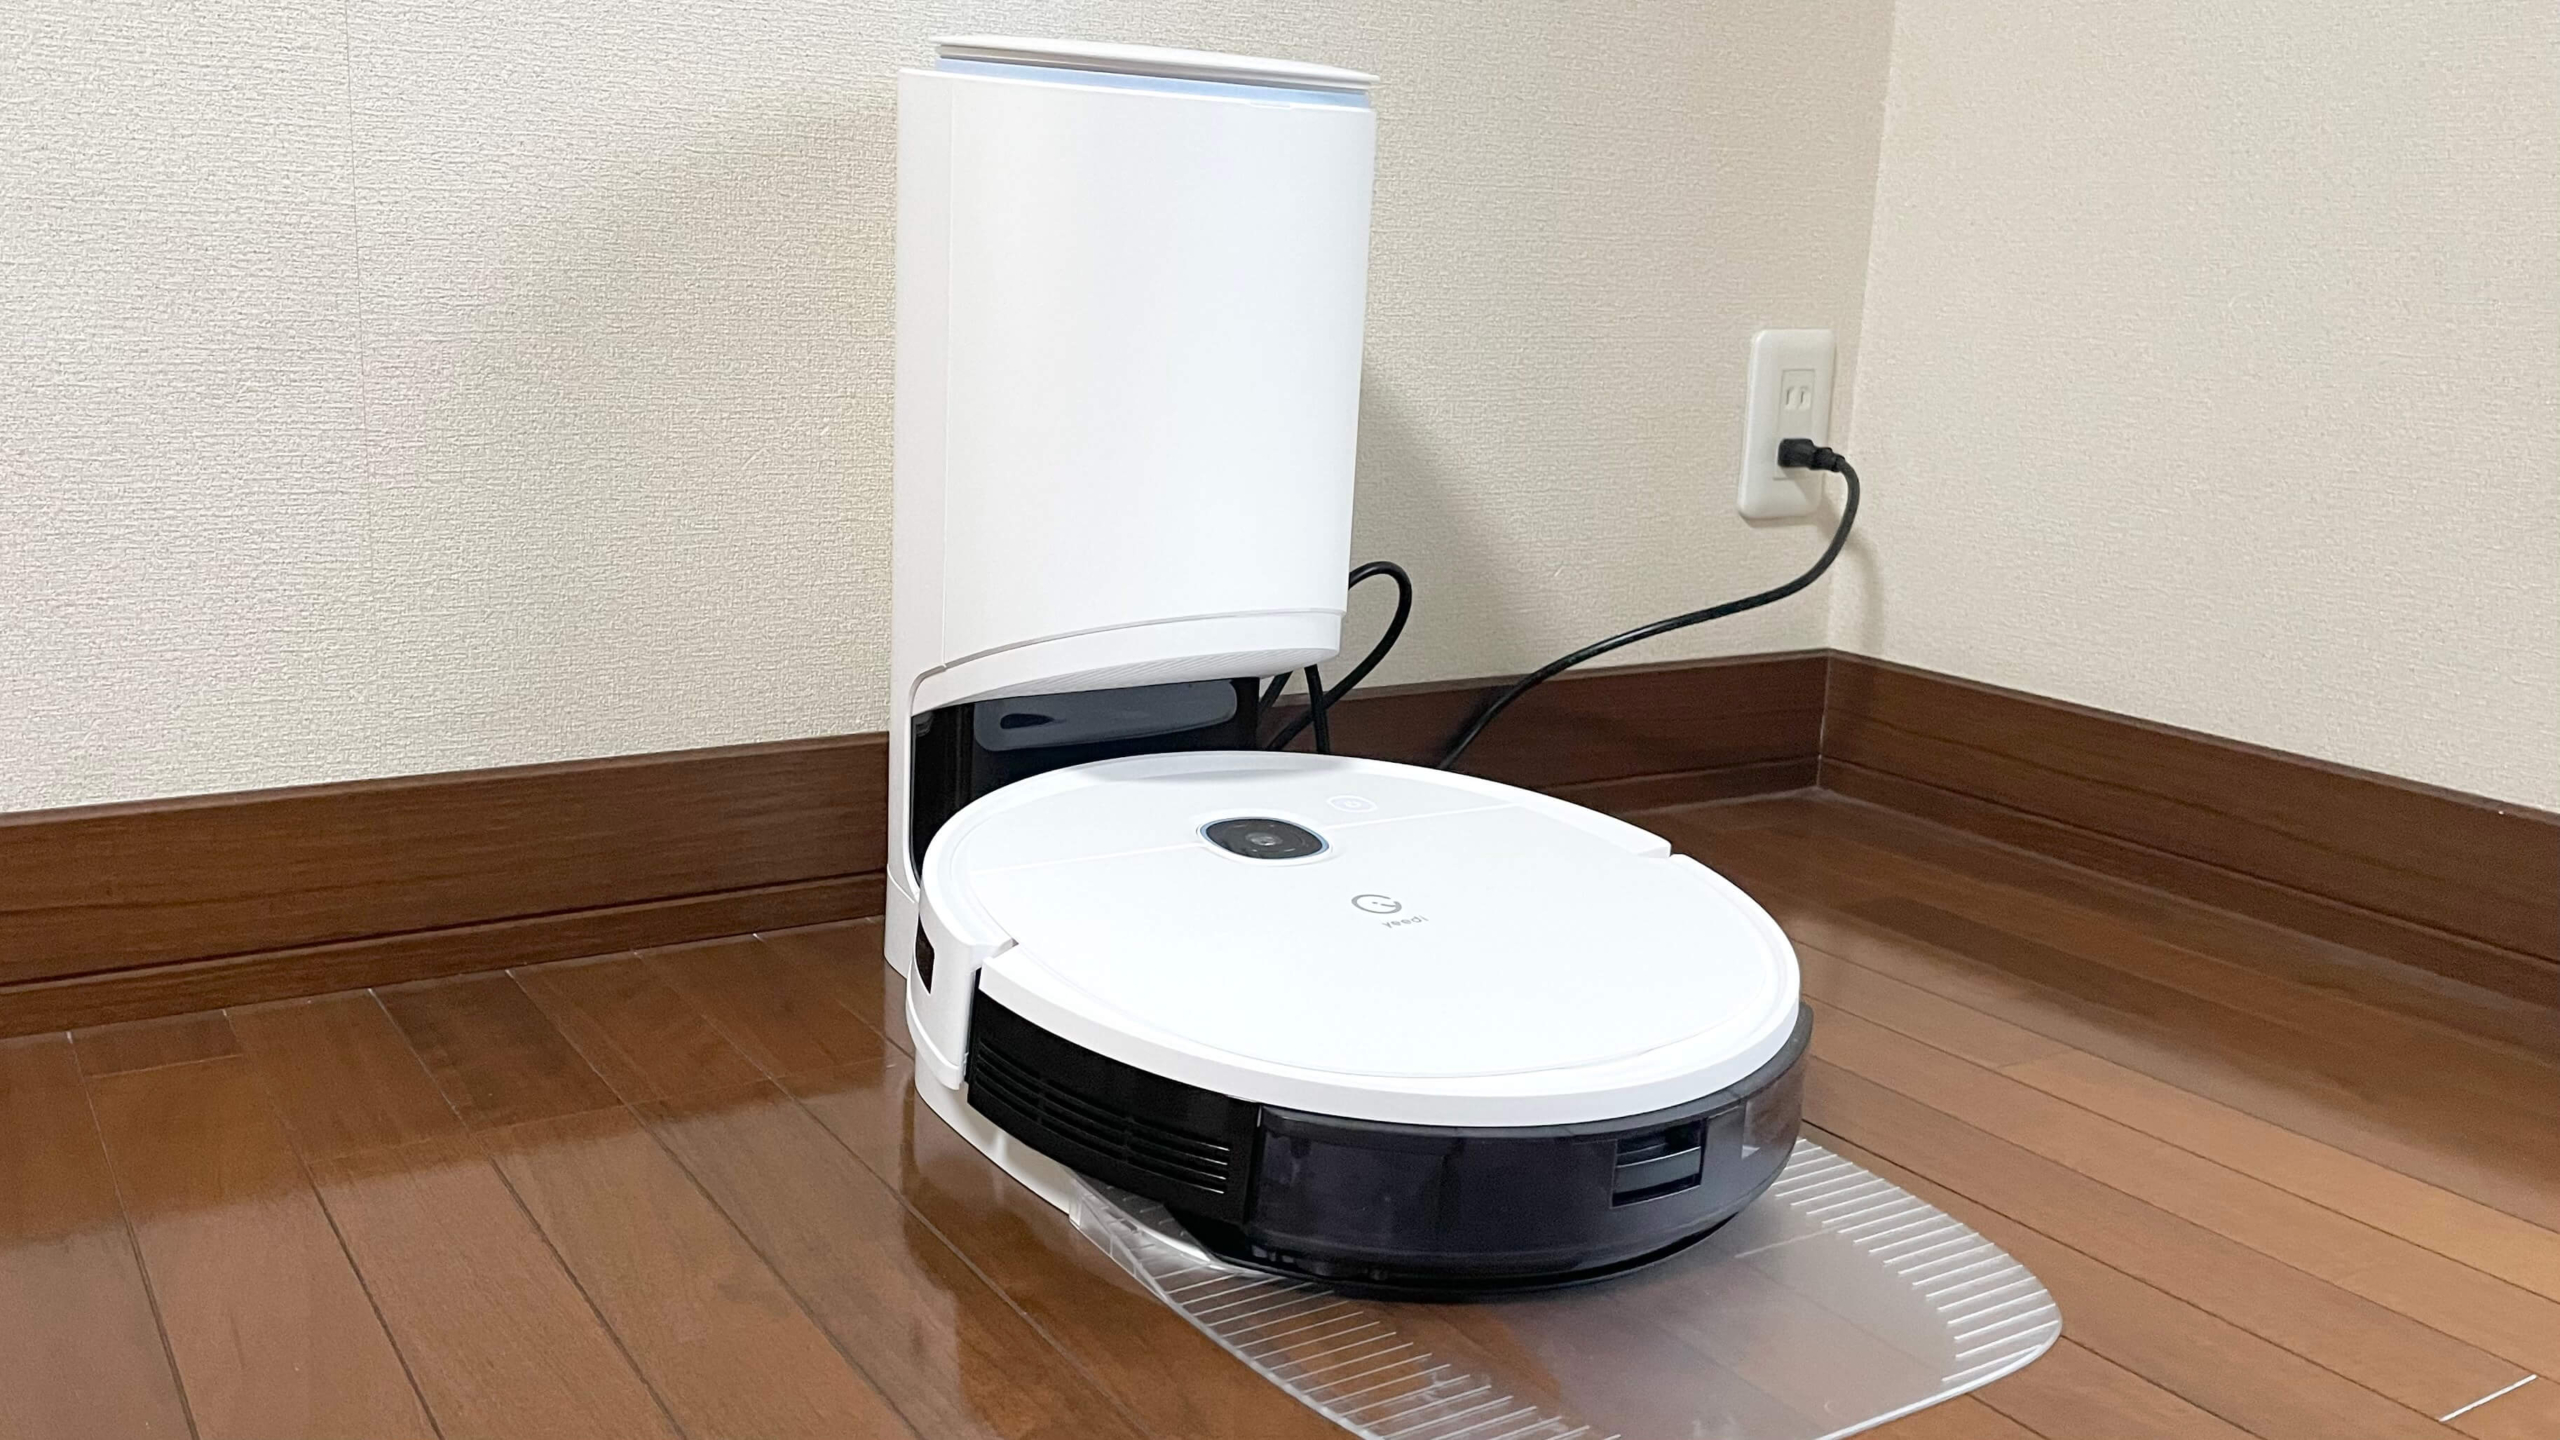 キラリリショップ家電yeedi vac 2 pro ロボット掃除機 振動モップ床拭き ゴミ自動回収